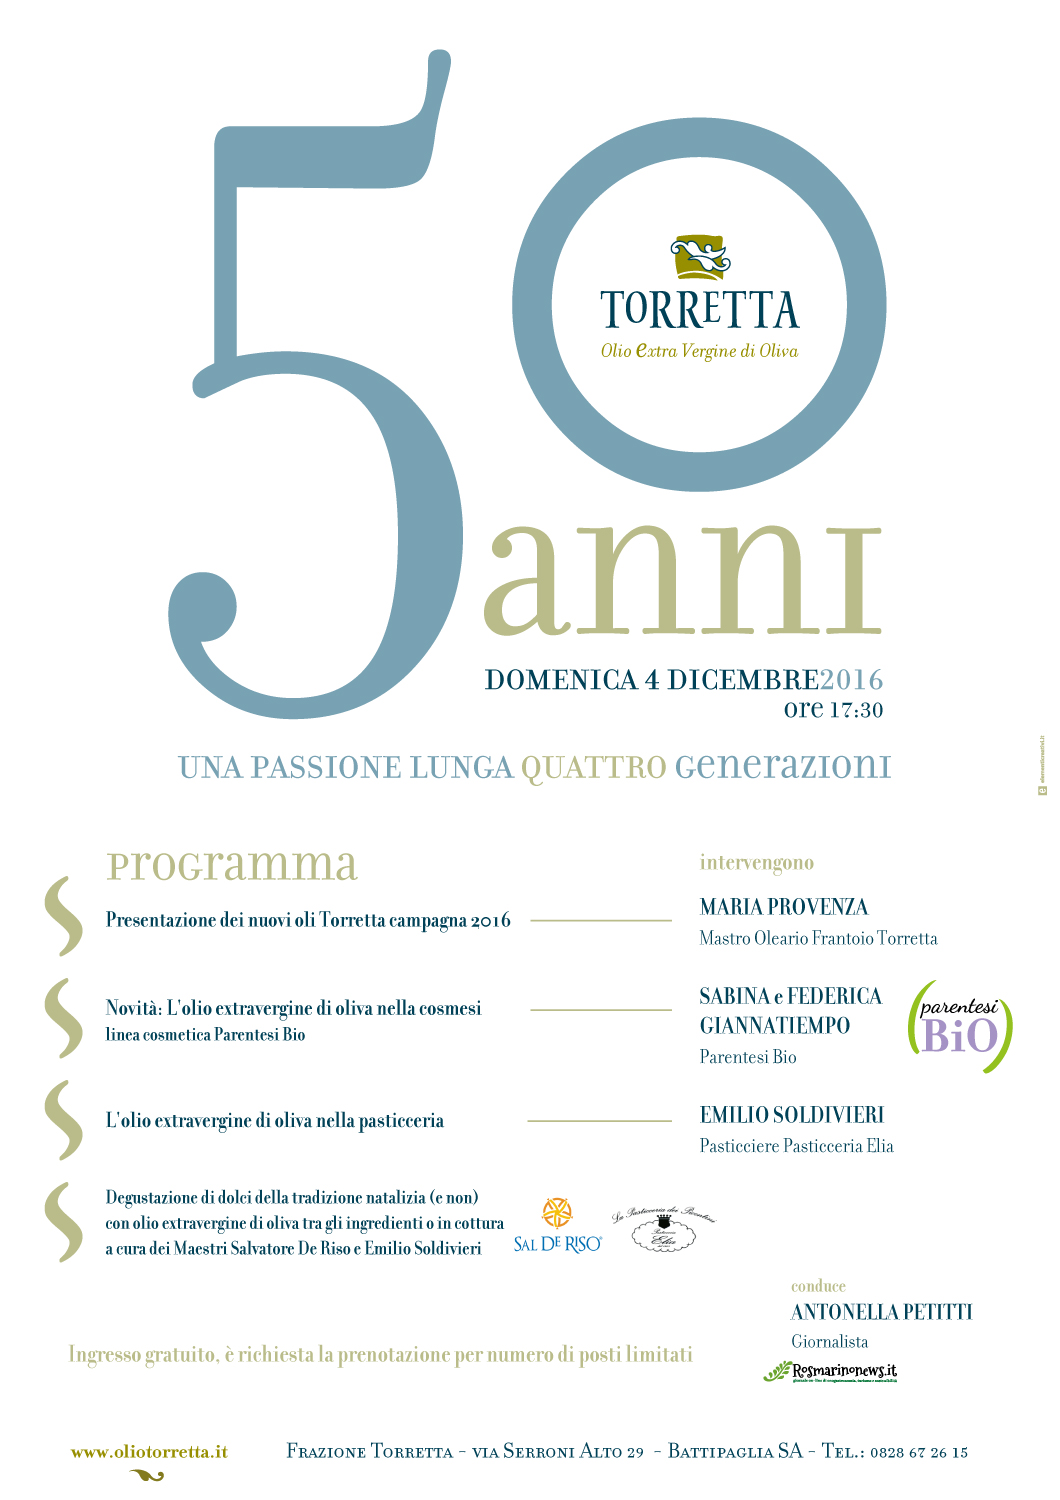 50 anni di olio: buon compleanno Torretta!